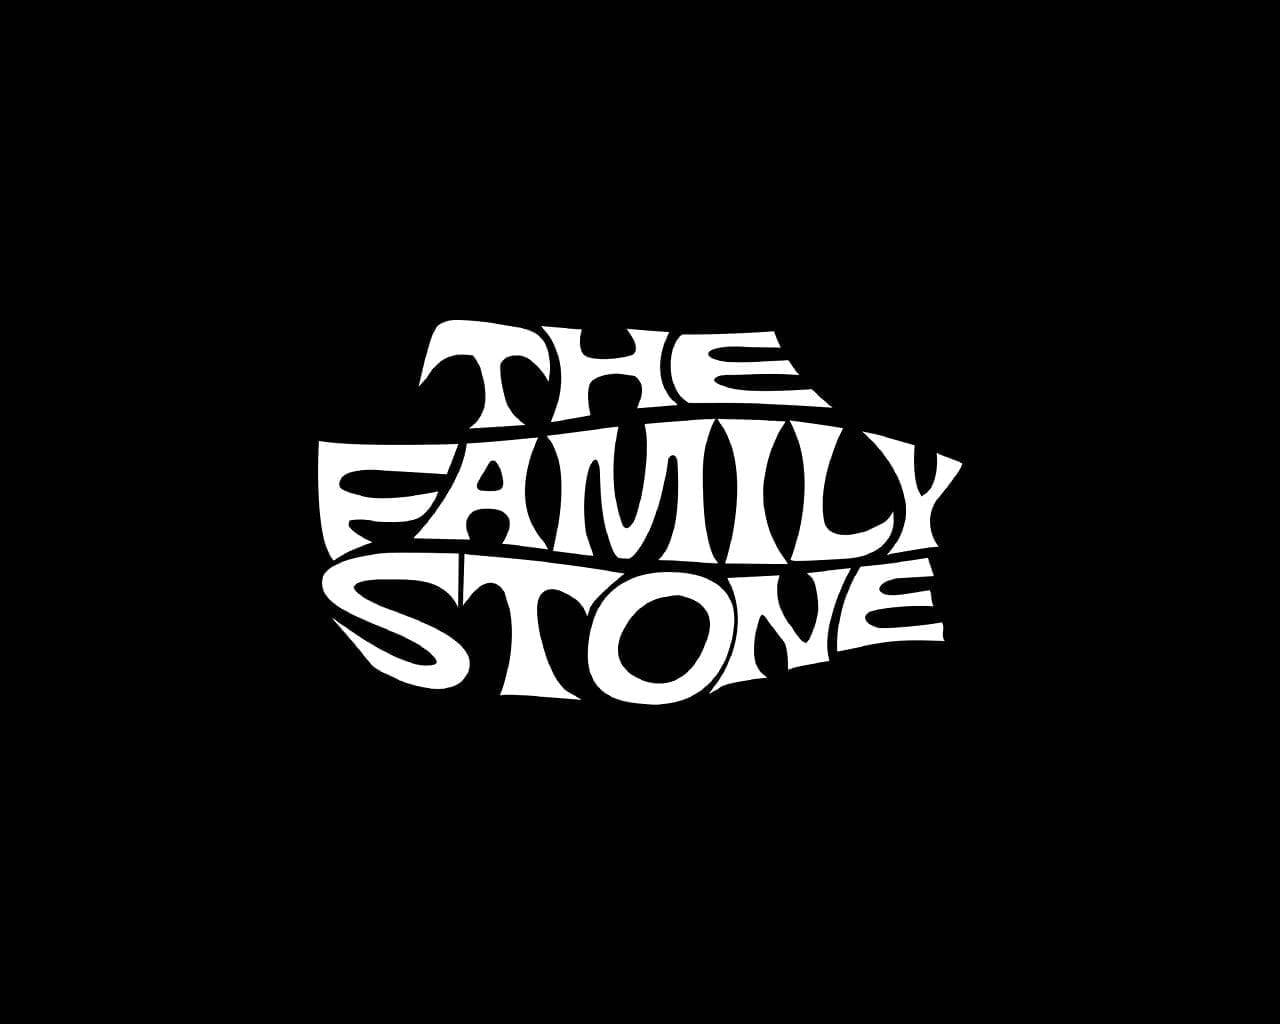 Slye La Famiglia Stone Testo Grafico Sfondo